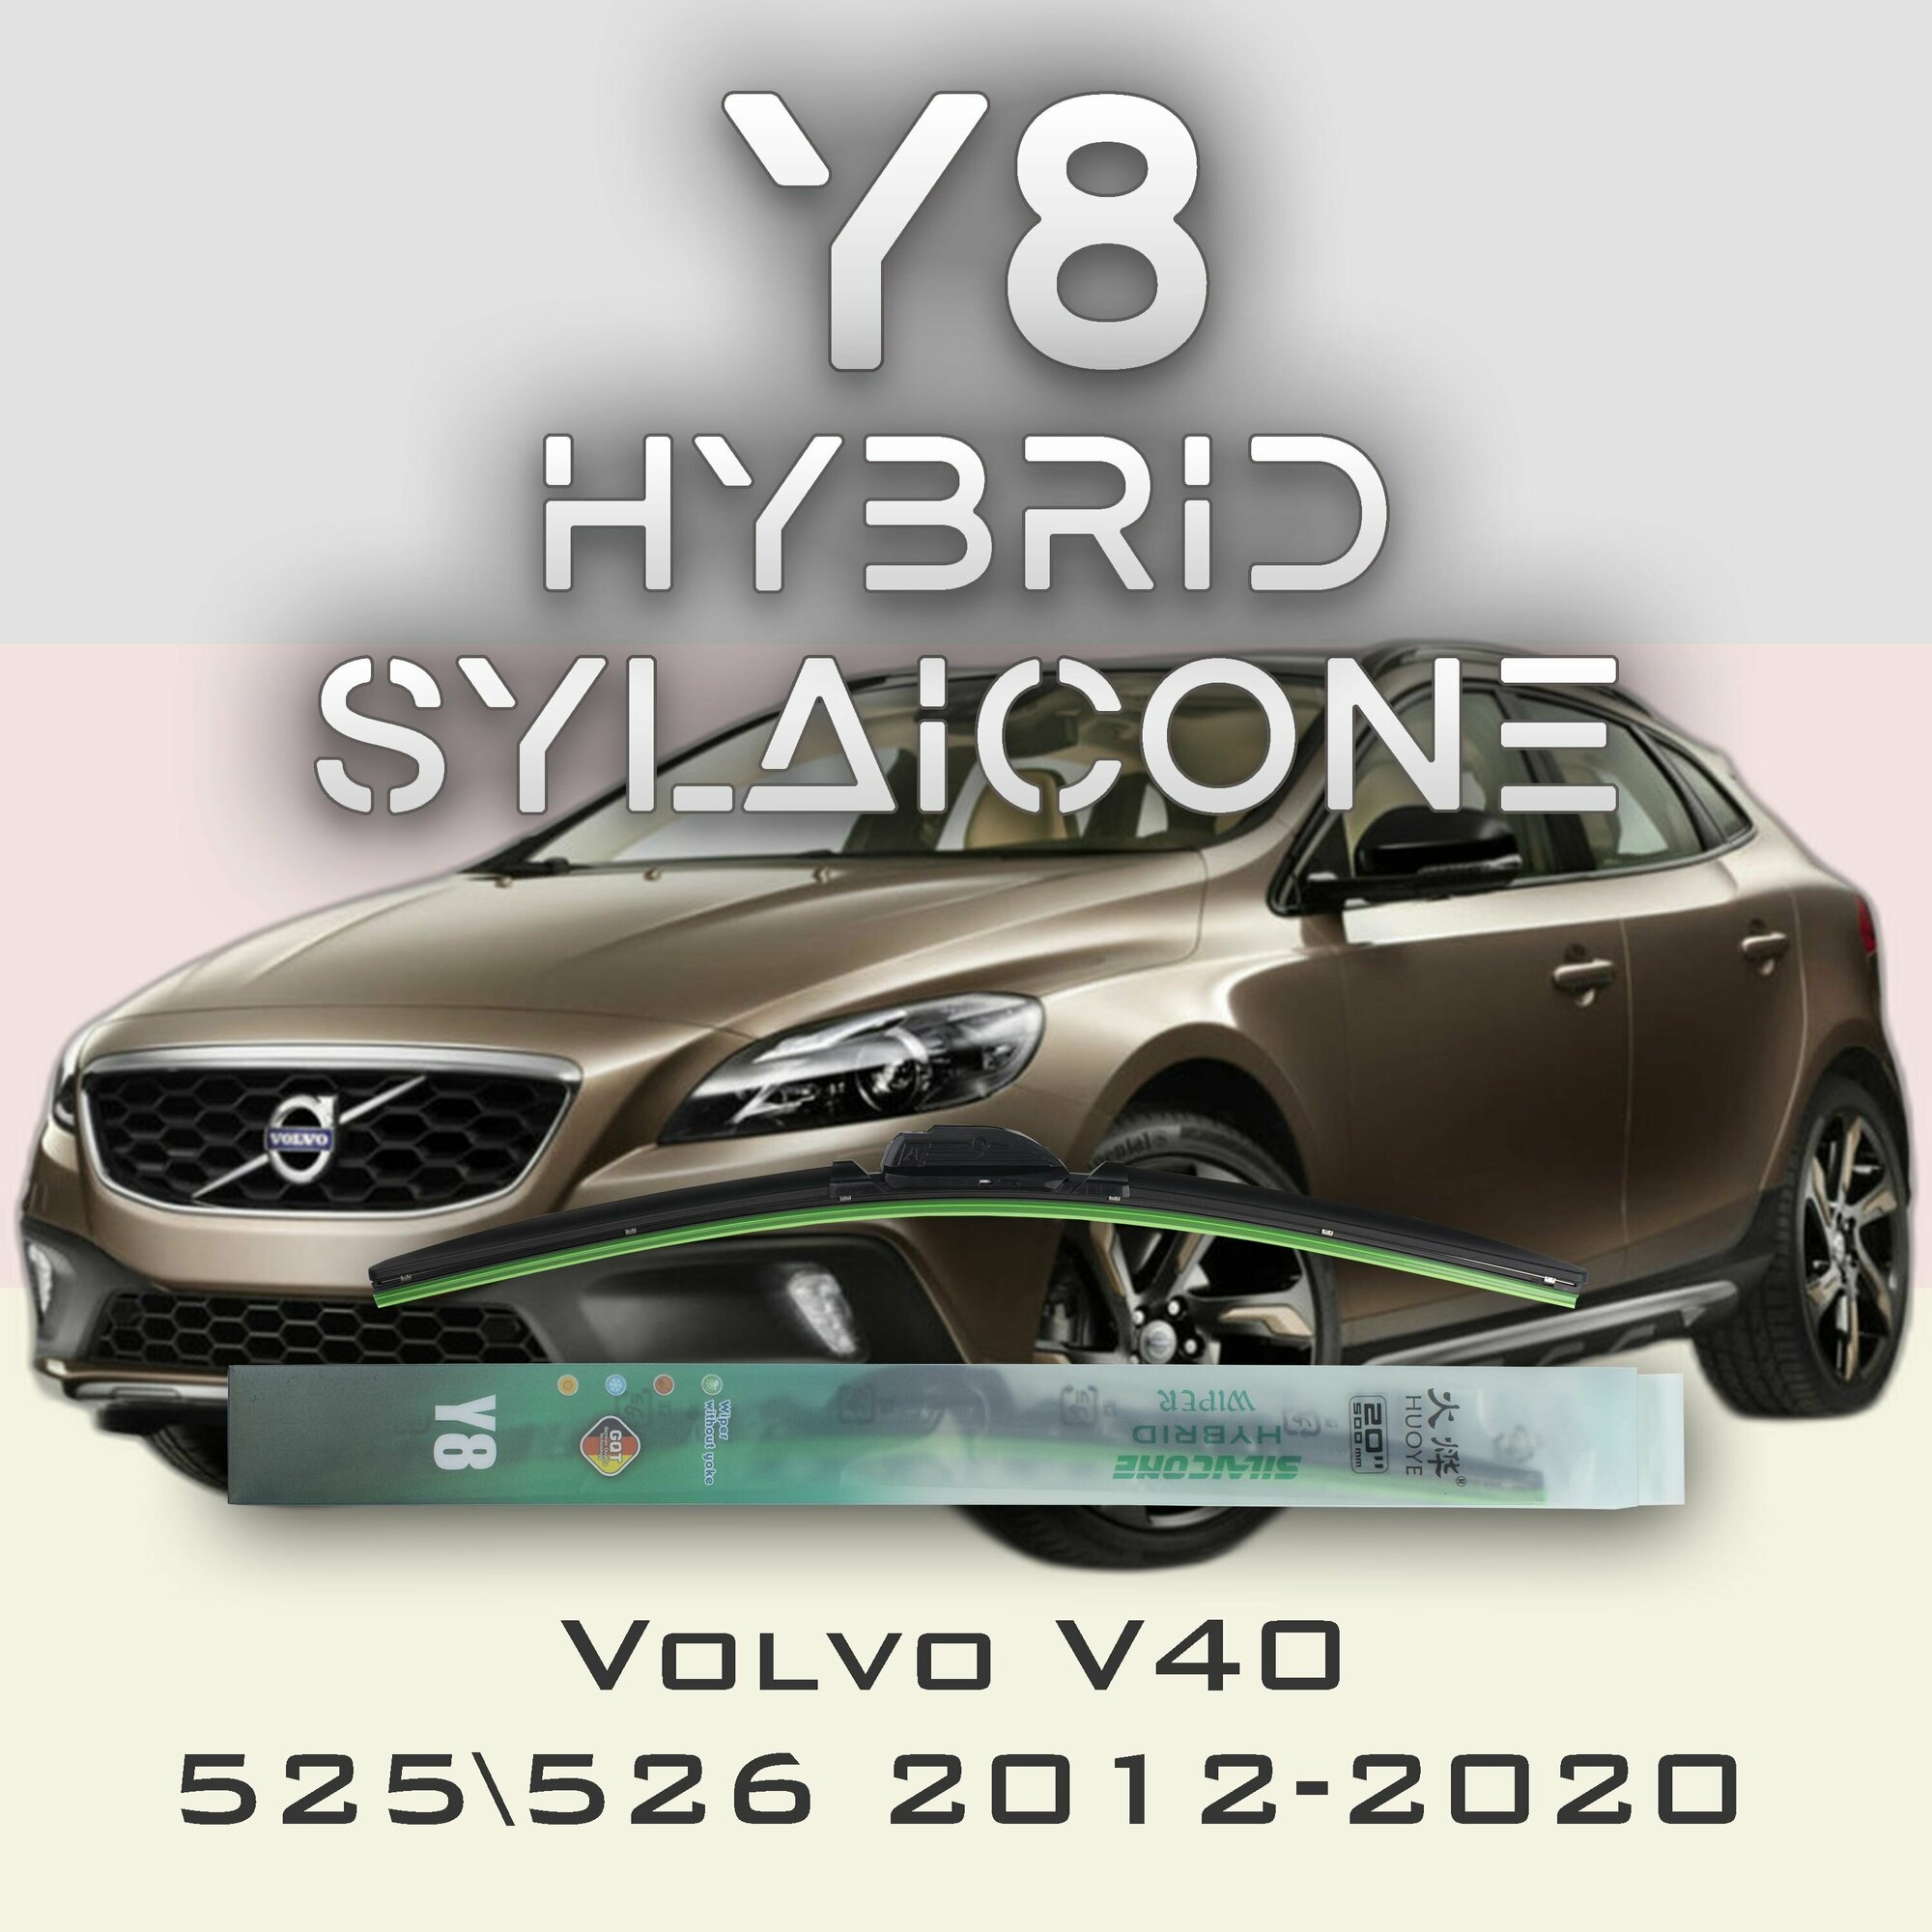 Комплект дворников 26" / 650 мм и 19" / 475 мм на Volvo V40 525 526 2012-2020 Гибридных силиконовых щеток стеклоочистителя Y8 - Кнопка (Push button)